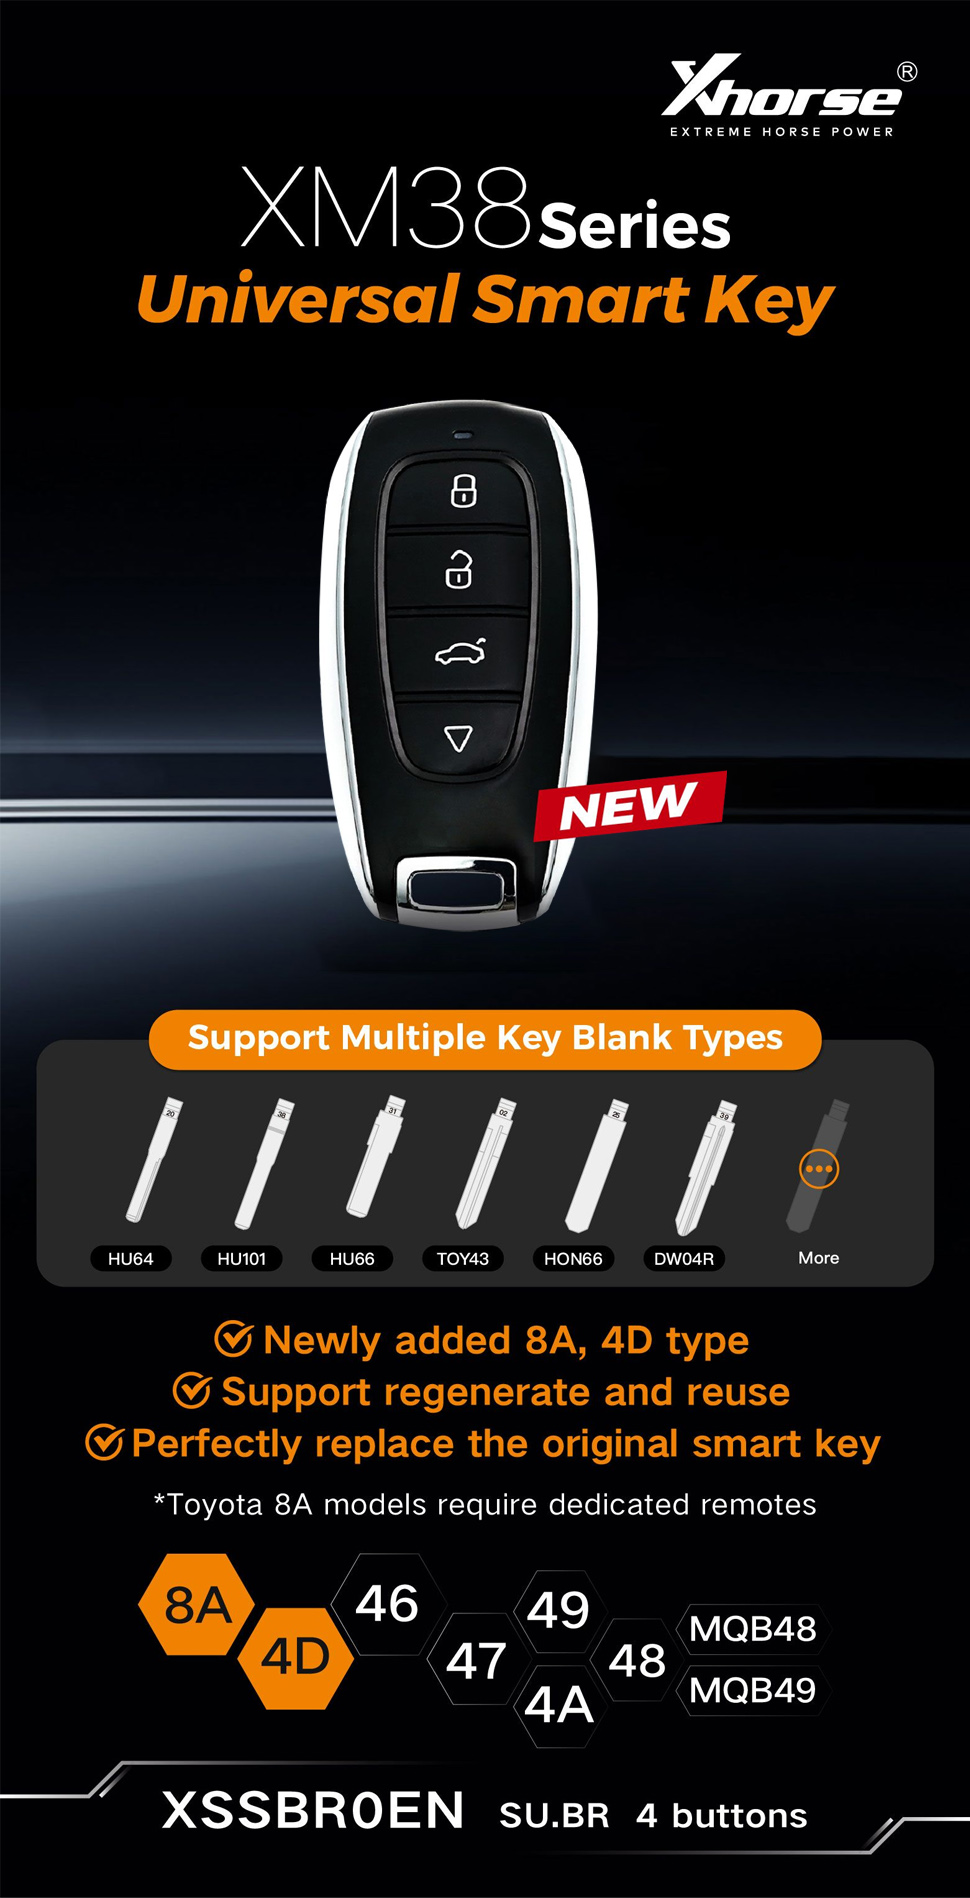 XHORSE Subaru 4 Buttons smart key